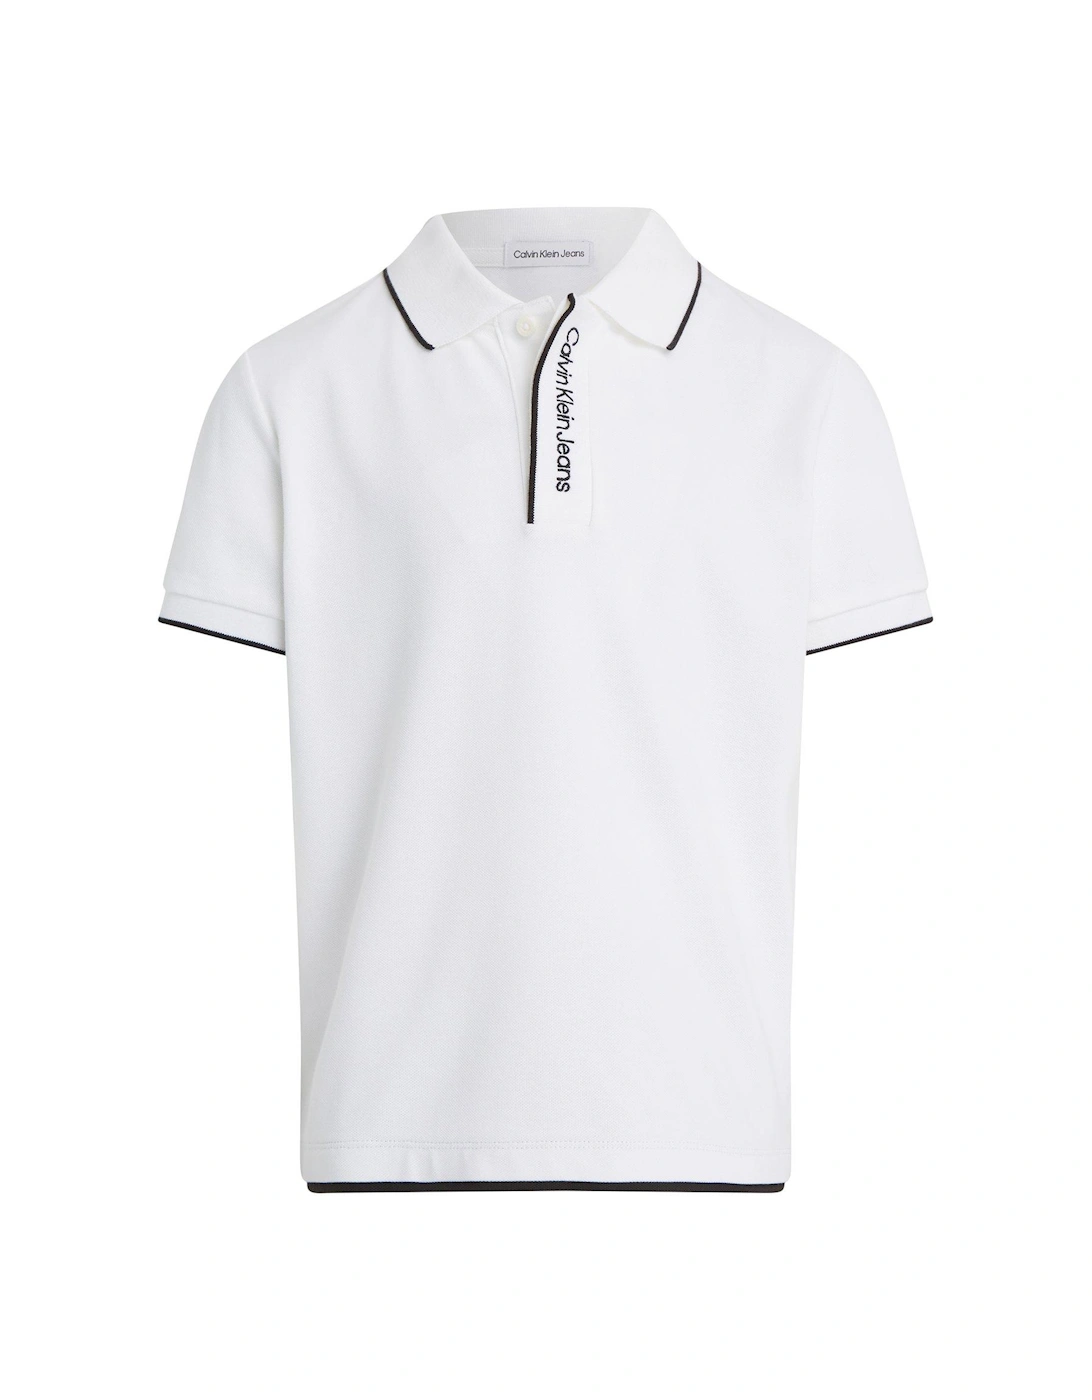 Boys Intarsia Logo Pique Short Sleeve Polo Shirt - Bright White, 6 of 5